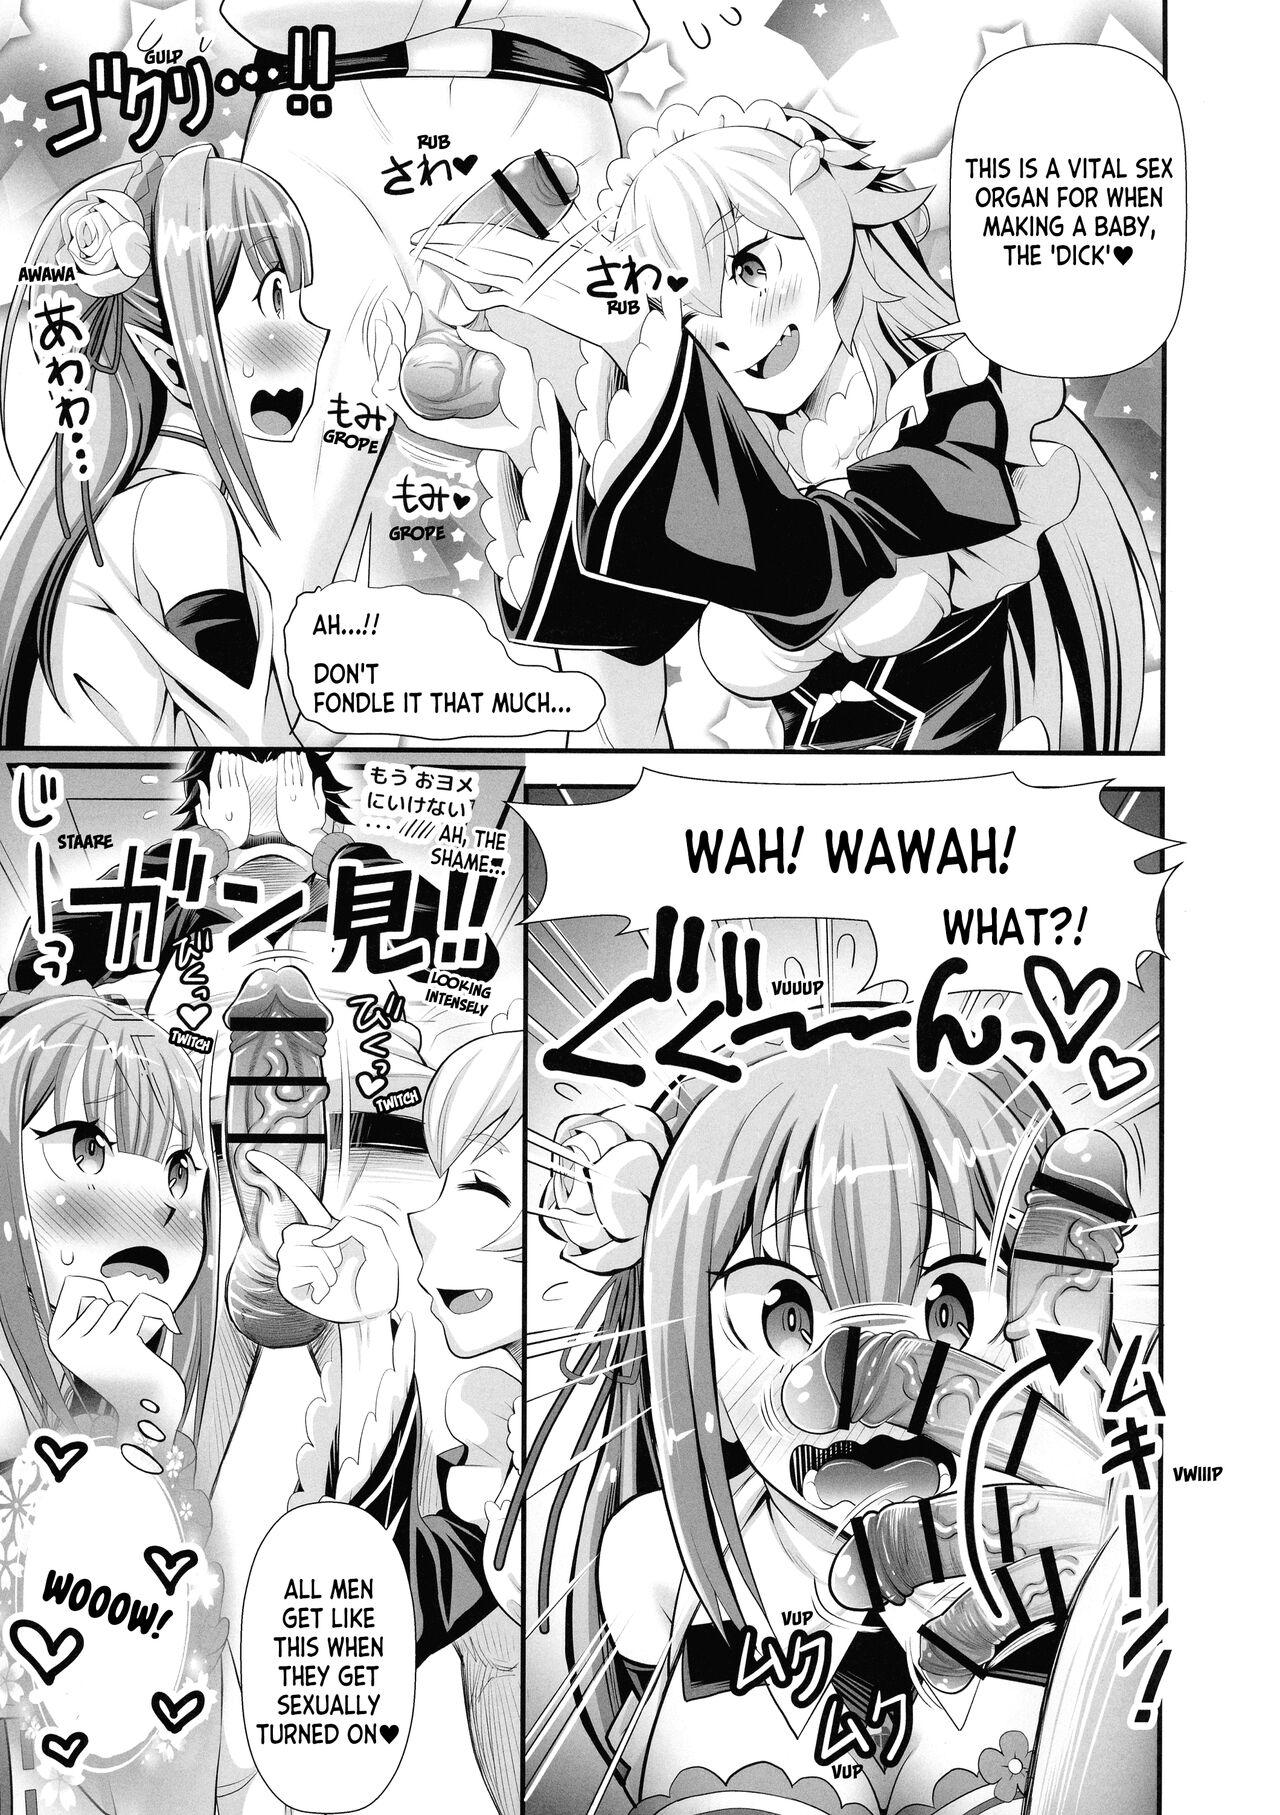 Cumming Re: Zero na Maid-san vol. 3 - Re zero kara hajimeru isekai seikatsu Ecchi - Page 7